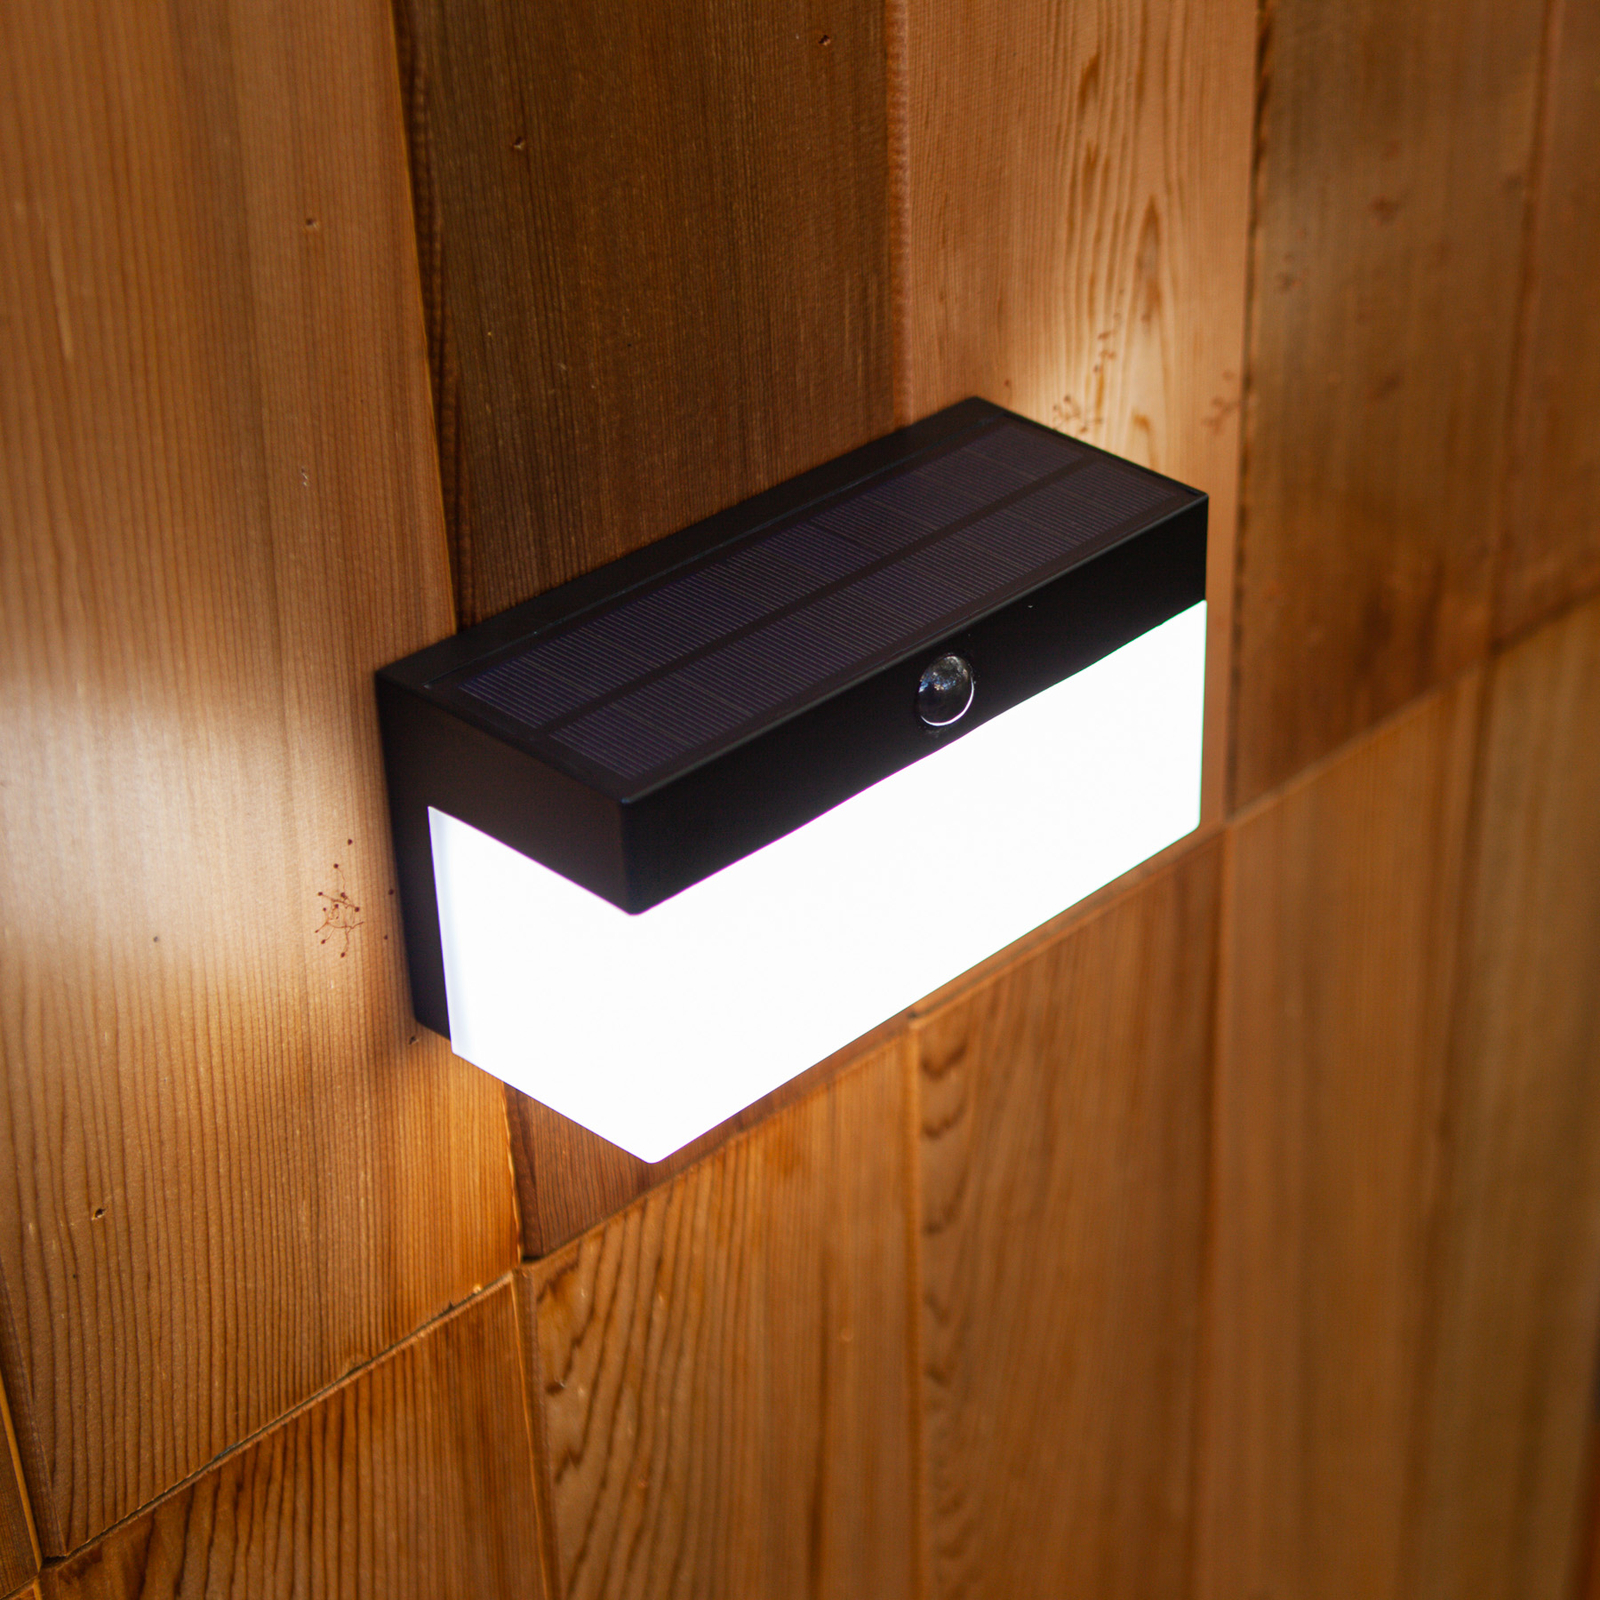 LED napelemes külső fali világítás Fran, CCT